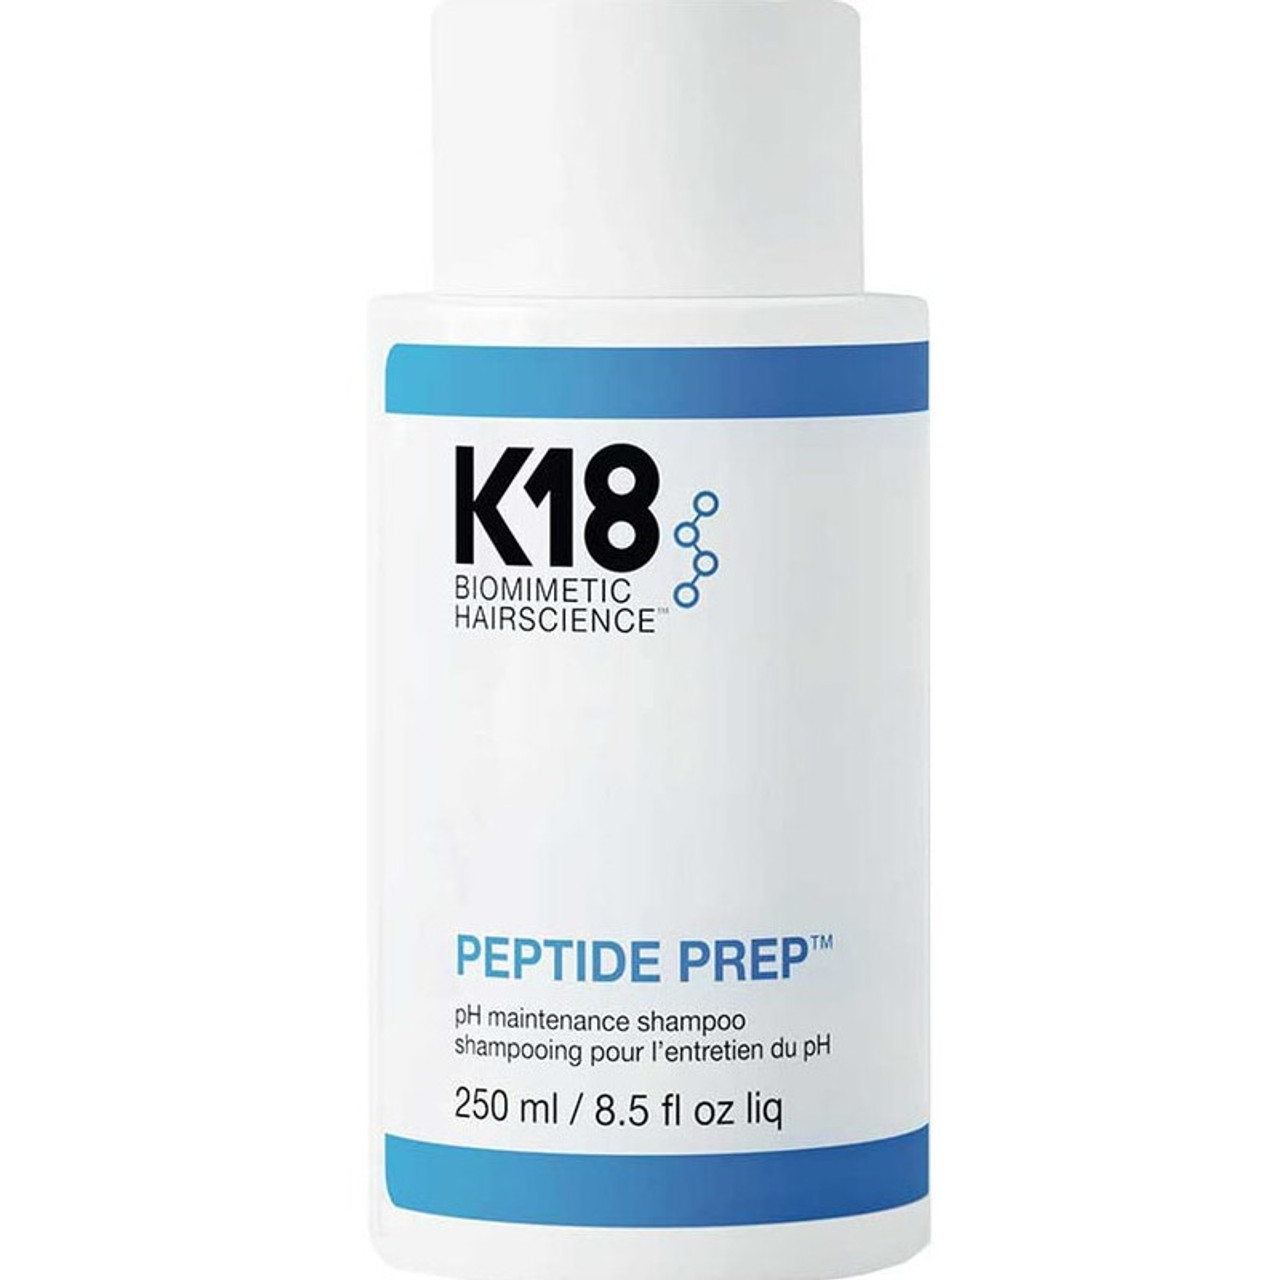 K18 Čisticí šampon Peptide Prep (pH Maintenance Shampoo) 250 ml